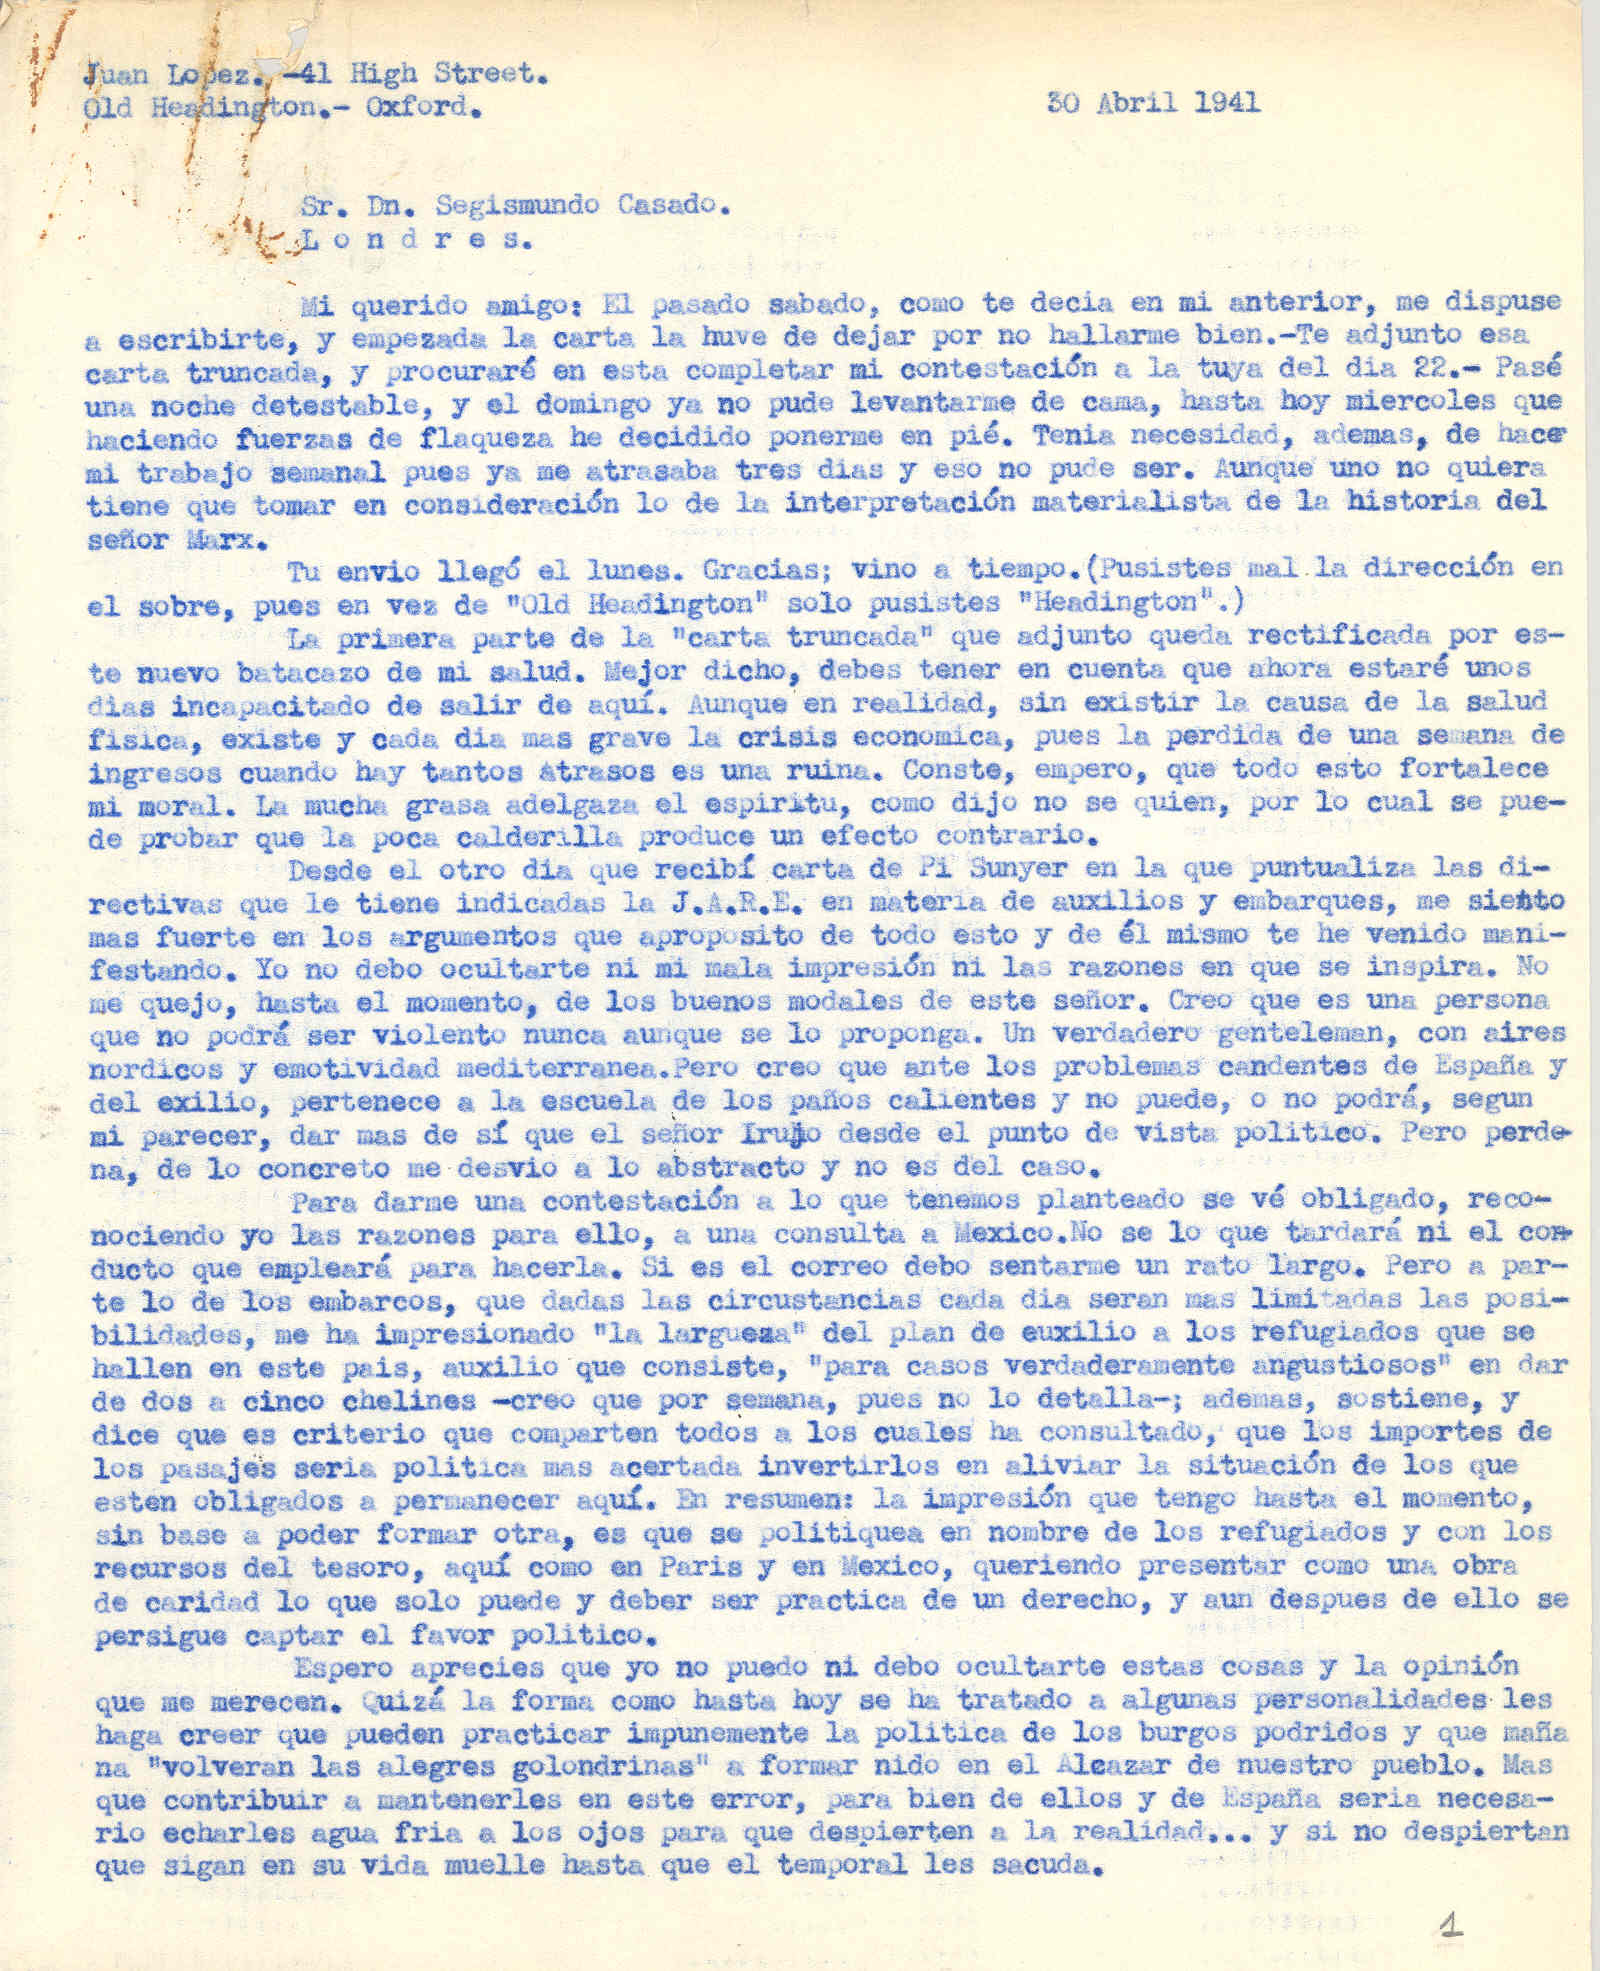 Carta a Segismundo Casado hablando del plan de auxilio a los refugiados que se hace en México y de la diferencia entre Acción directa y totalitarismo, también del libro proyectado junto con Madariaga y Casado.